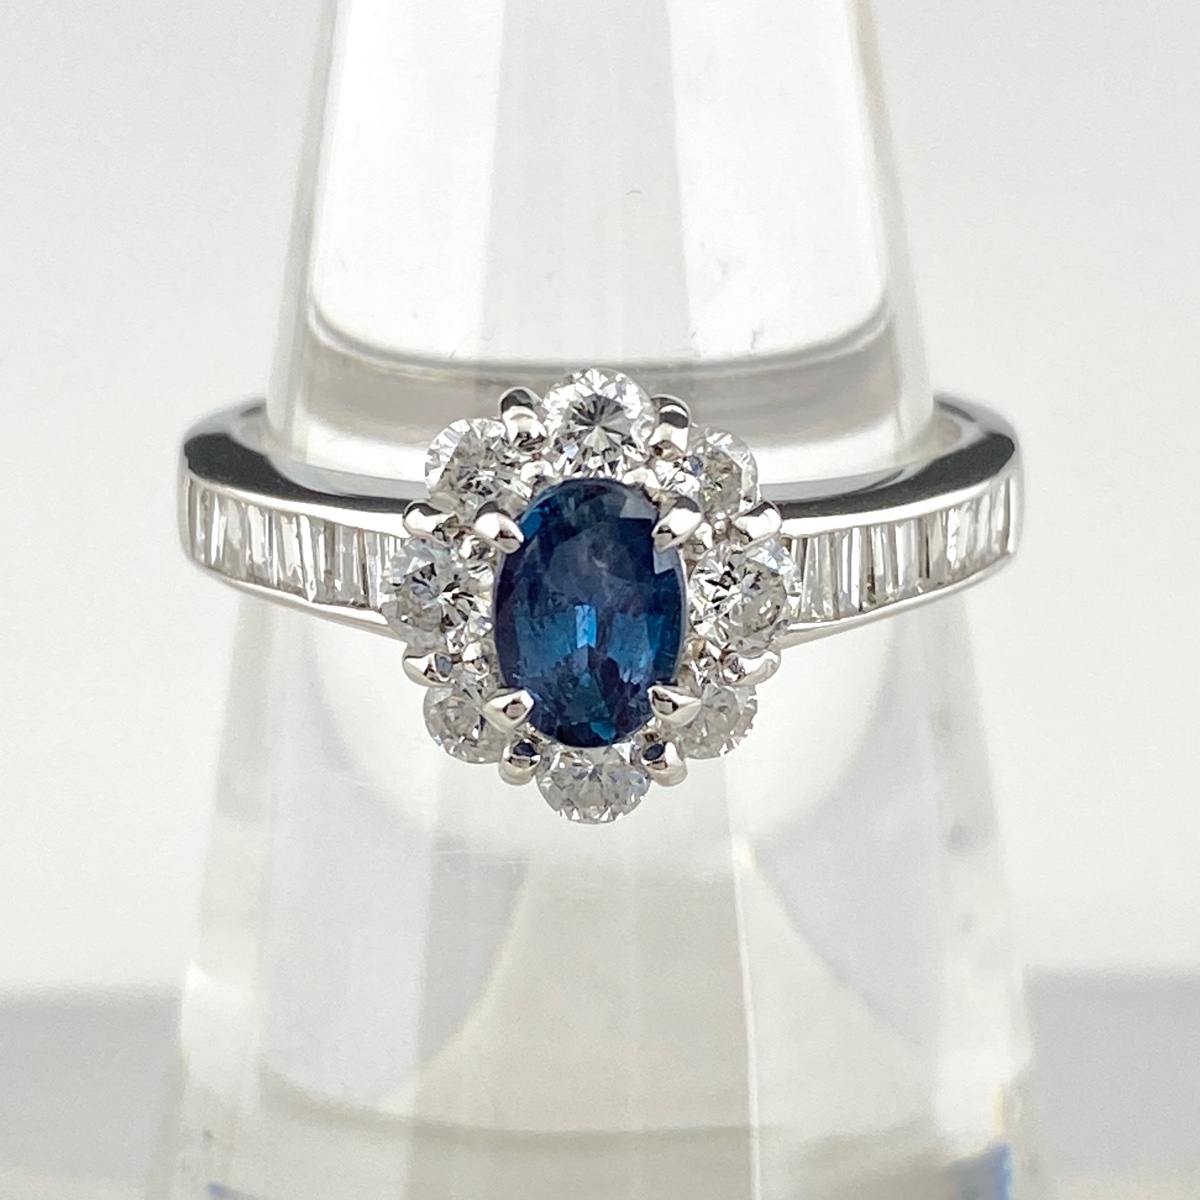 【楽天市場】アレキサンドライト デザインリング プラチナ メレダイヤ 指輪 リング 約11号 Pt900 アレキサンドライト ダイヤモンド